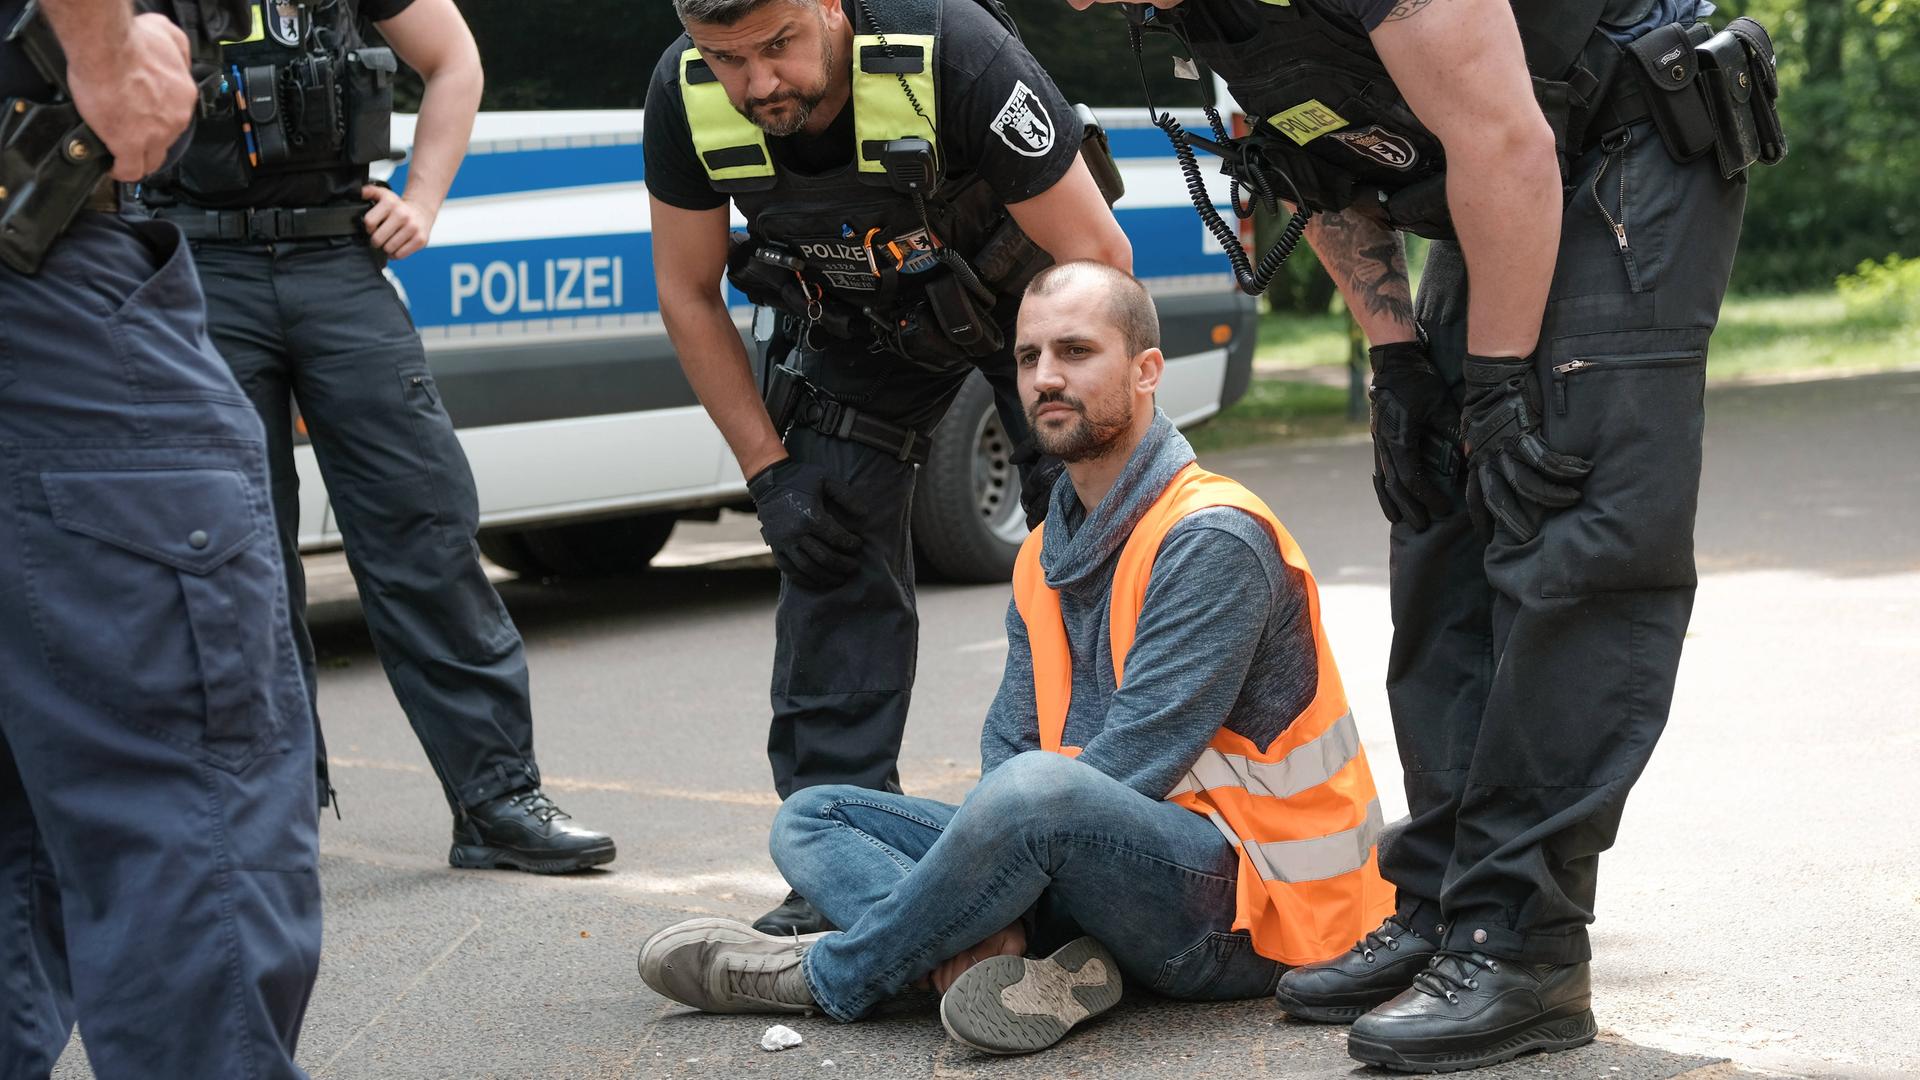 Polizisten sprechen mit einem Mann, der im Schneidersitz auf einer Straße in Berlin sitzt.